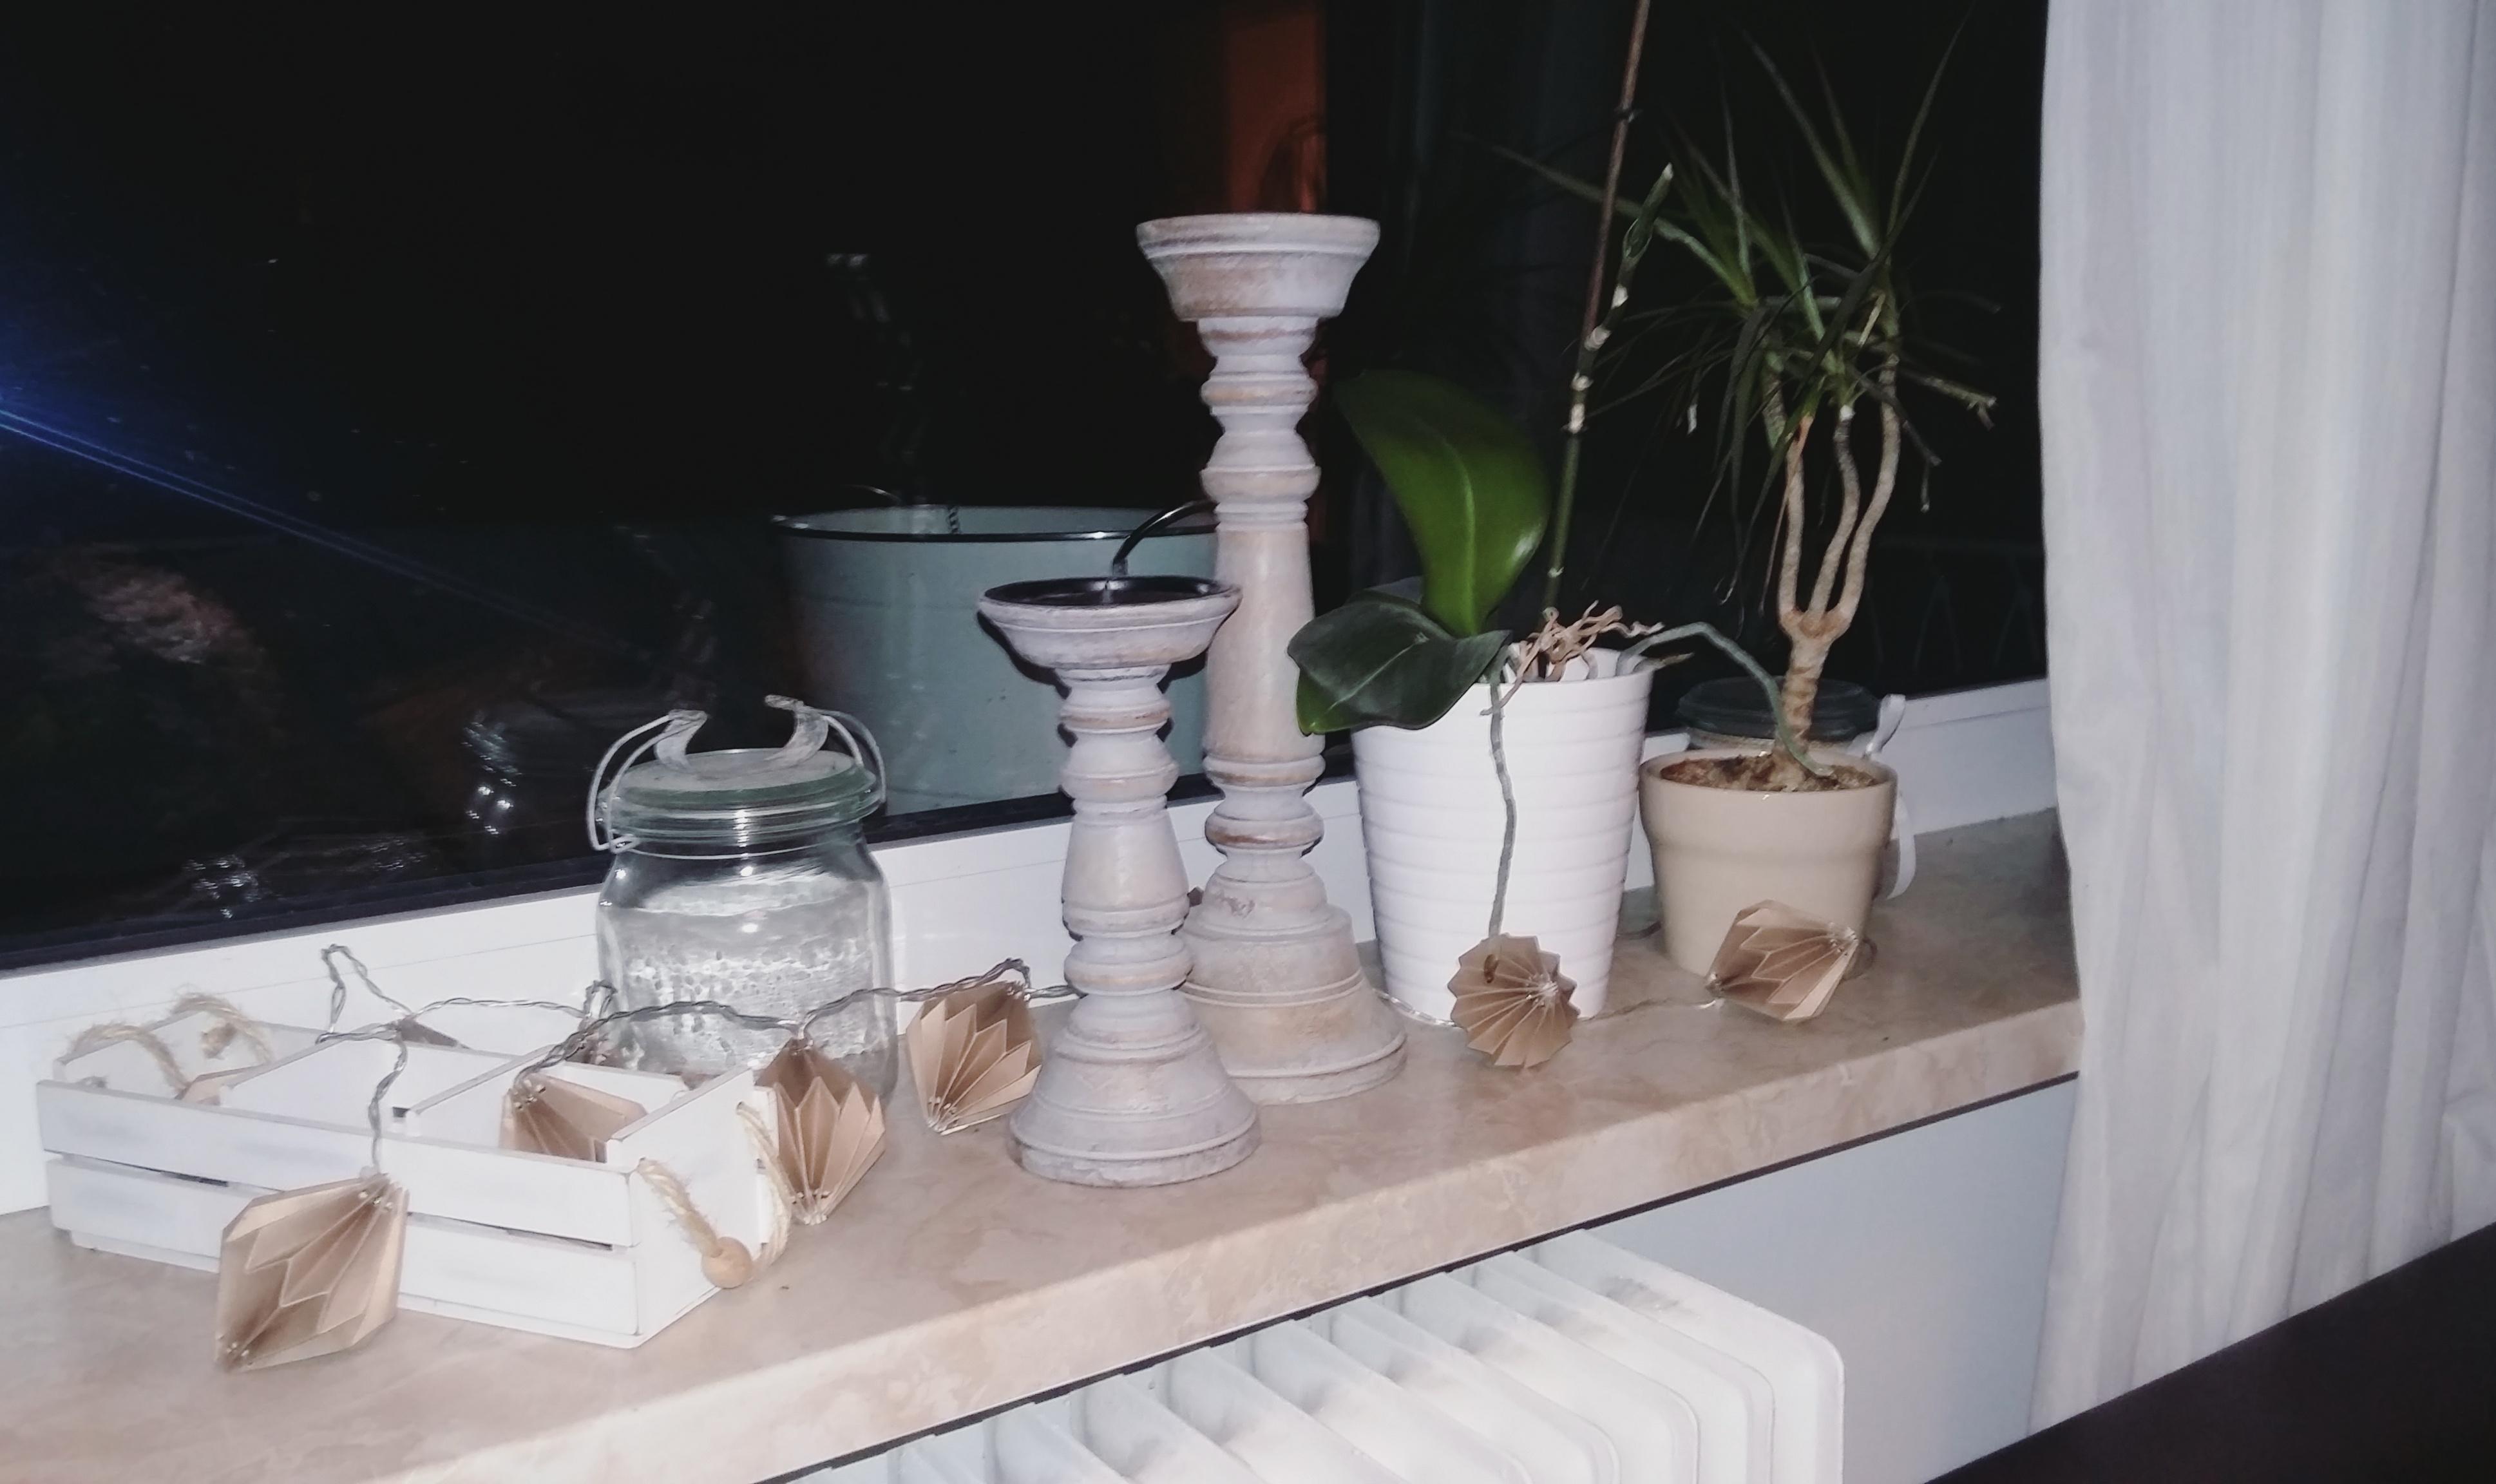 Meine #fensterdeko im #kissprinzip - keep it short and simple #livingabc #wooden #glases #ceramics #couchliebt